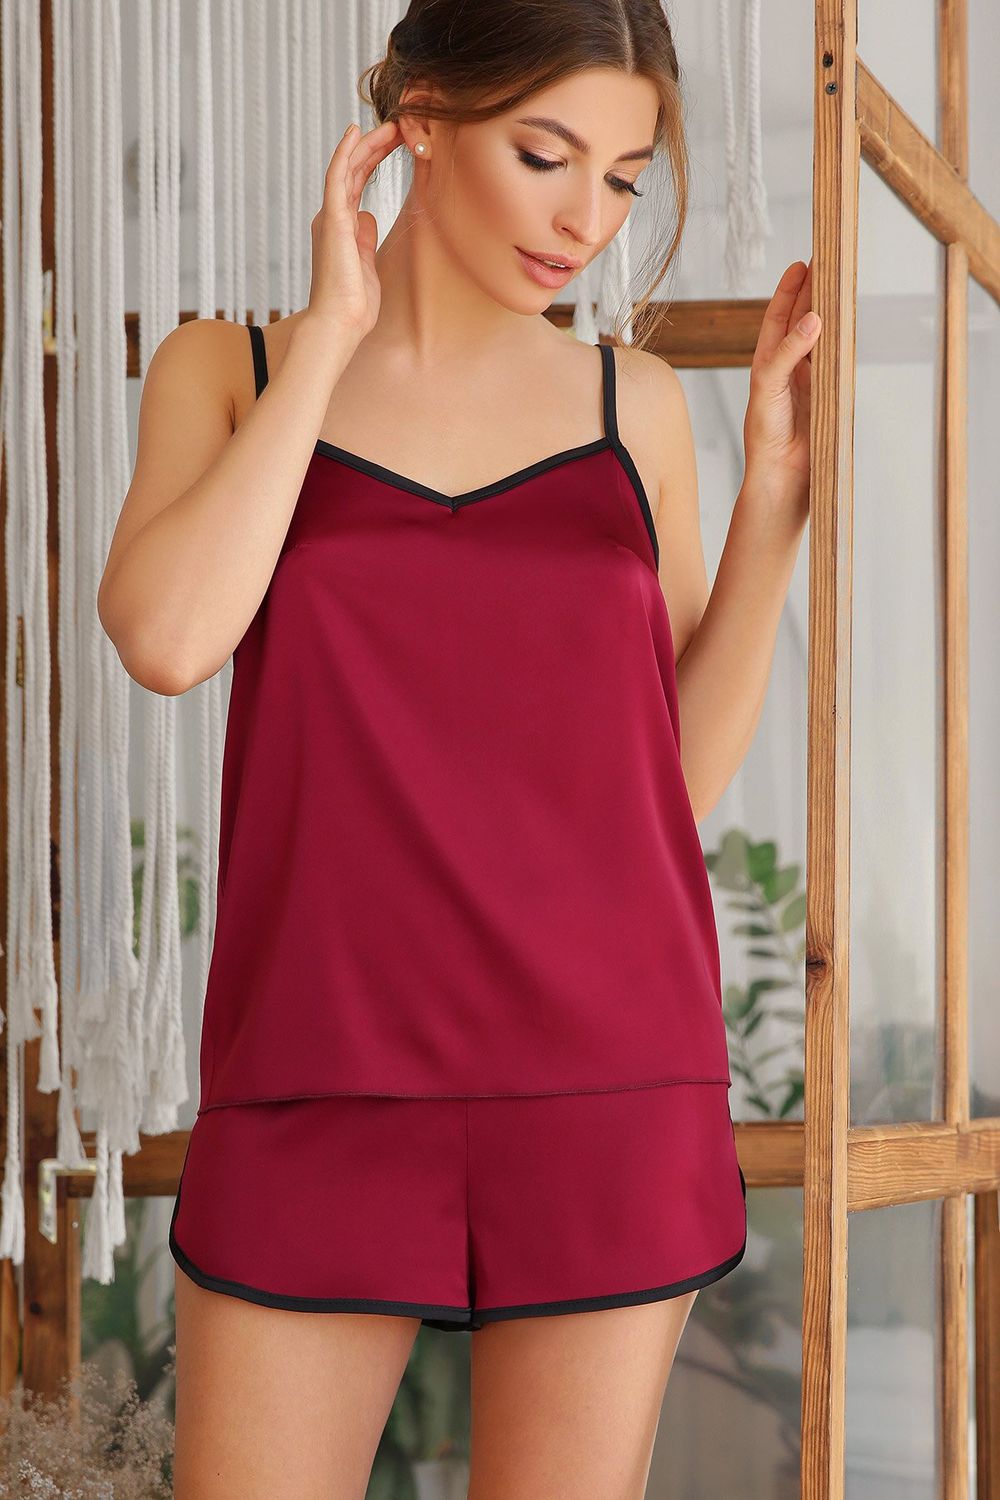 Жіночі шовкові домашні шорти бордові - фото